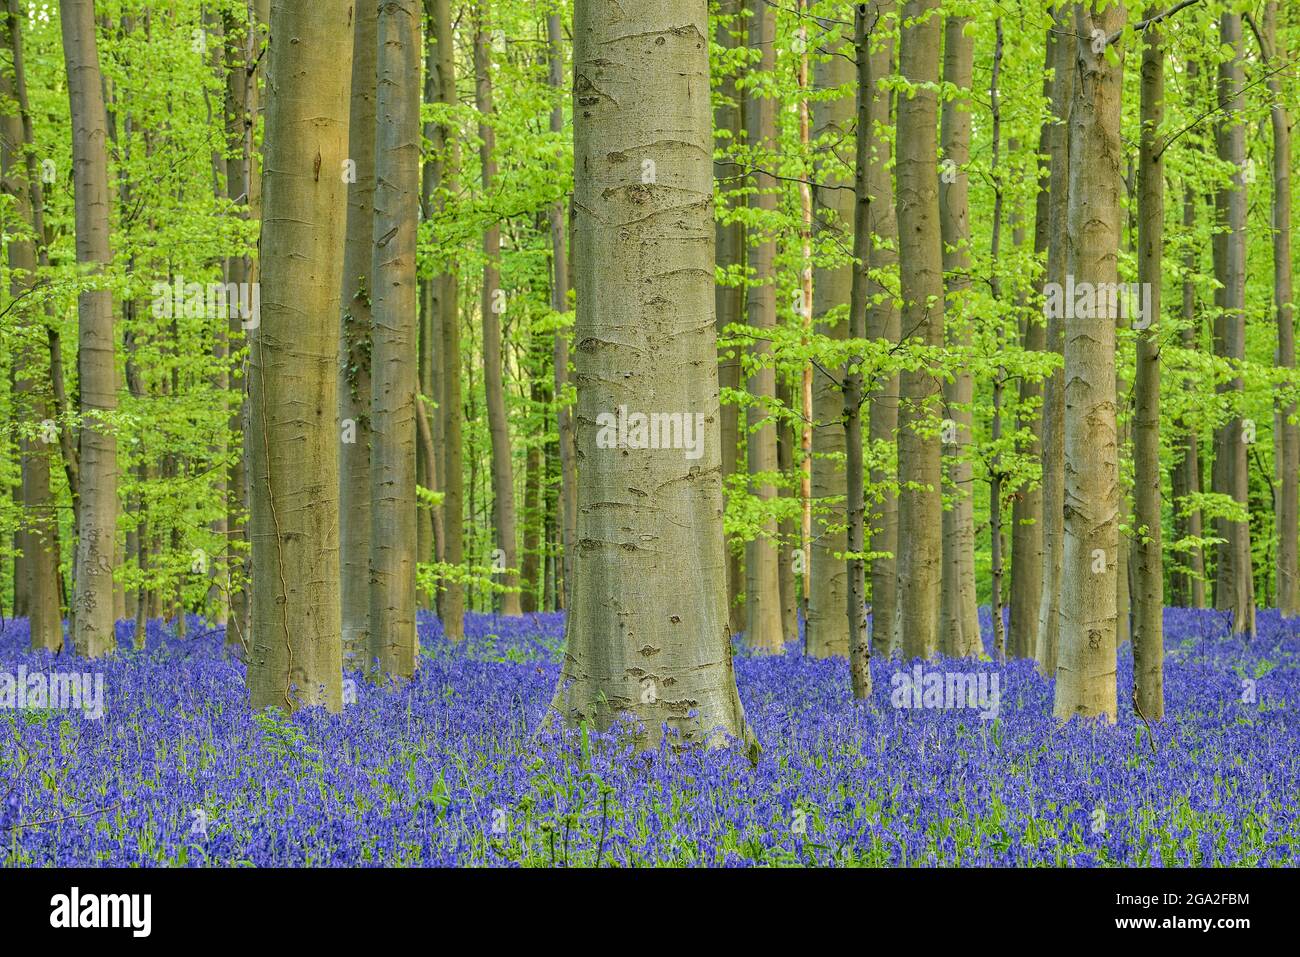 Flores de bluebell (Hyacintoides non-scripta) madera de haya alfombra de madera dura a principios de la primavera Foto de stock